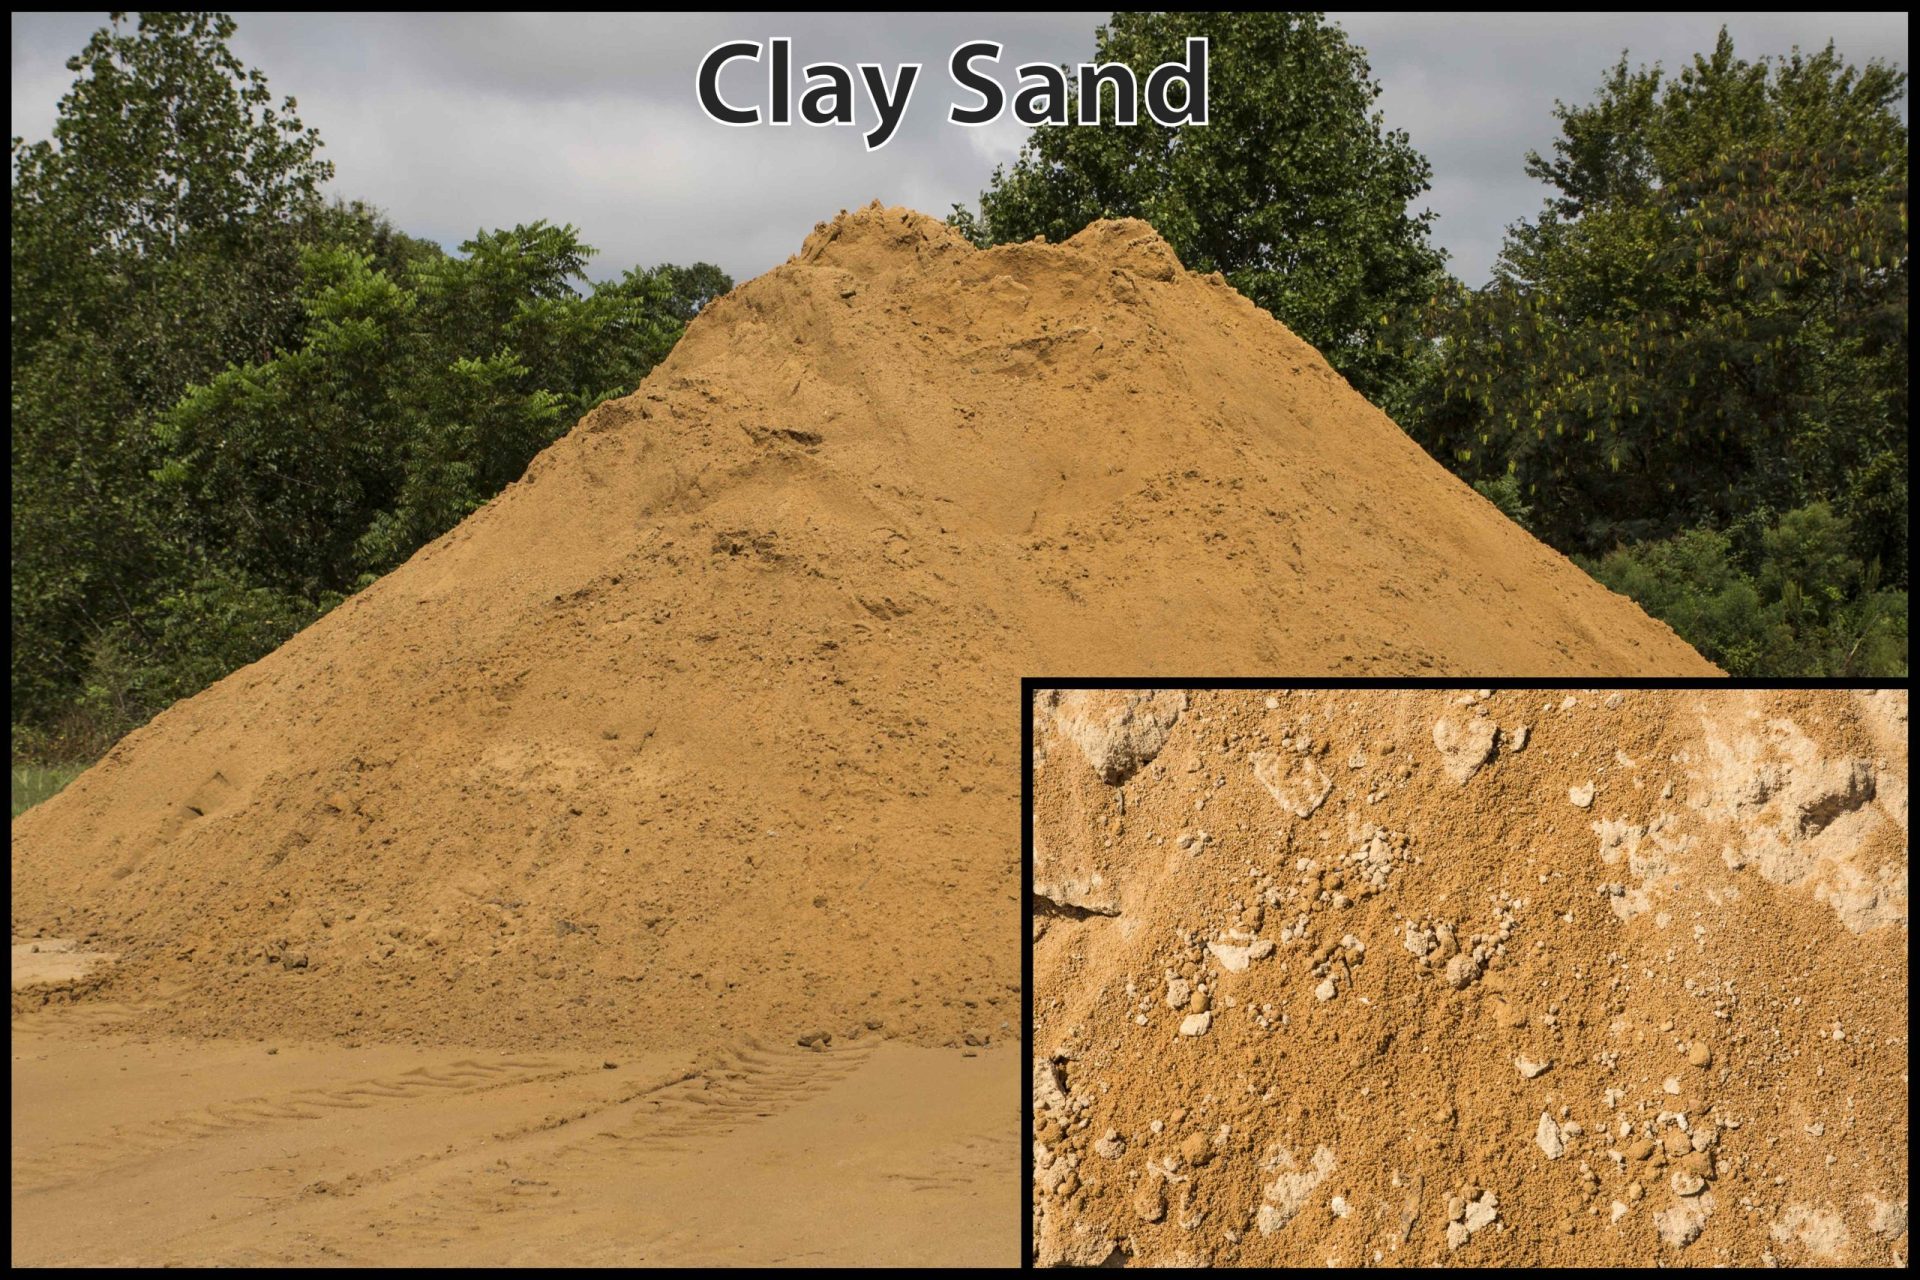 Clay sand